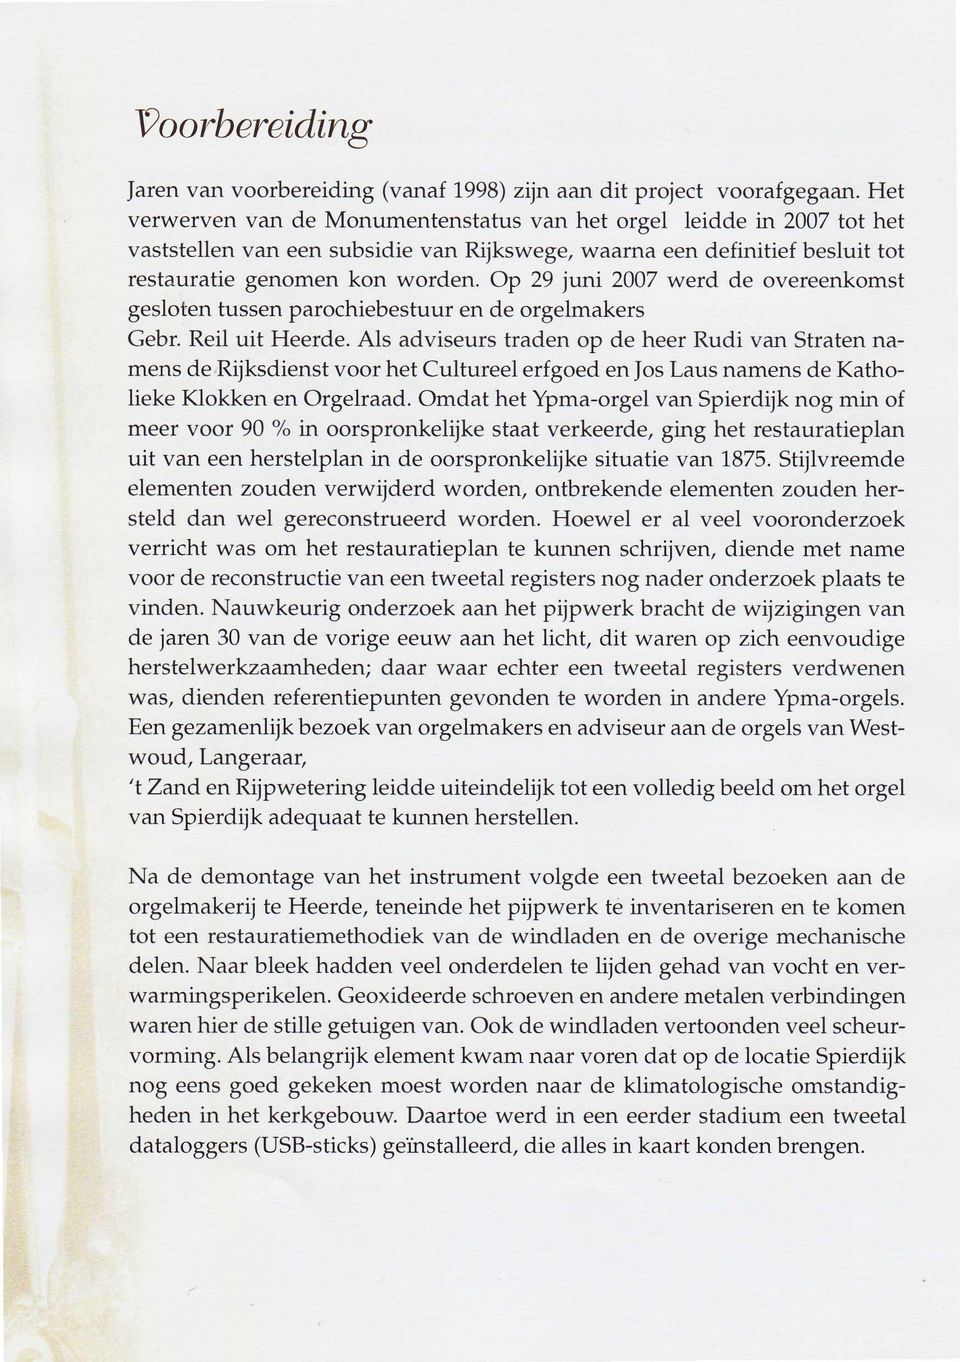 Op 29 juni 2007 werd de overeenkomst gesloten tussen parochiebestuur en de orgelmakers Gebr. Reil uit Heerde.